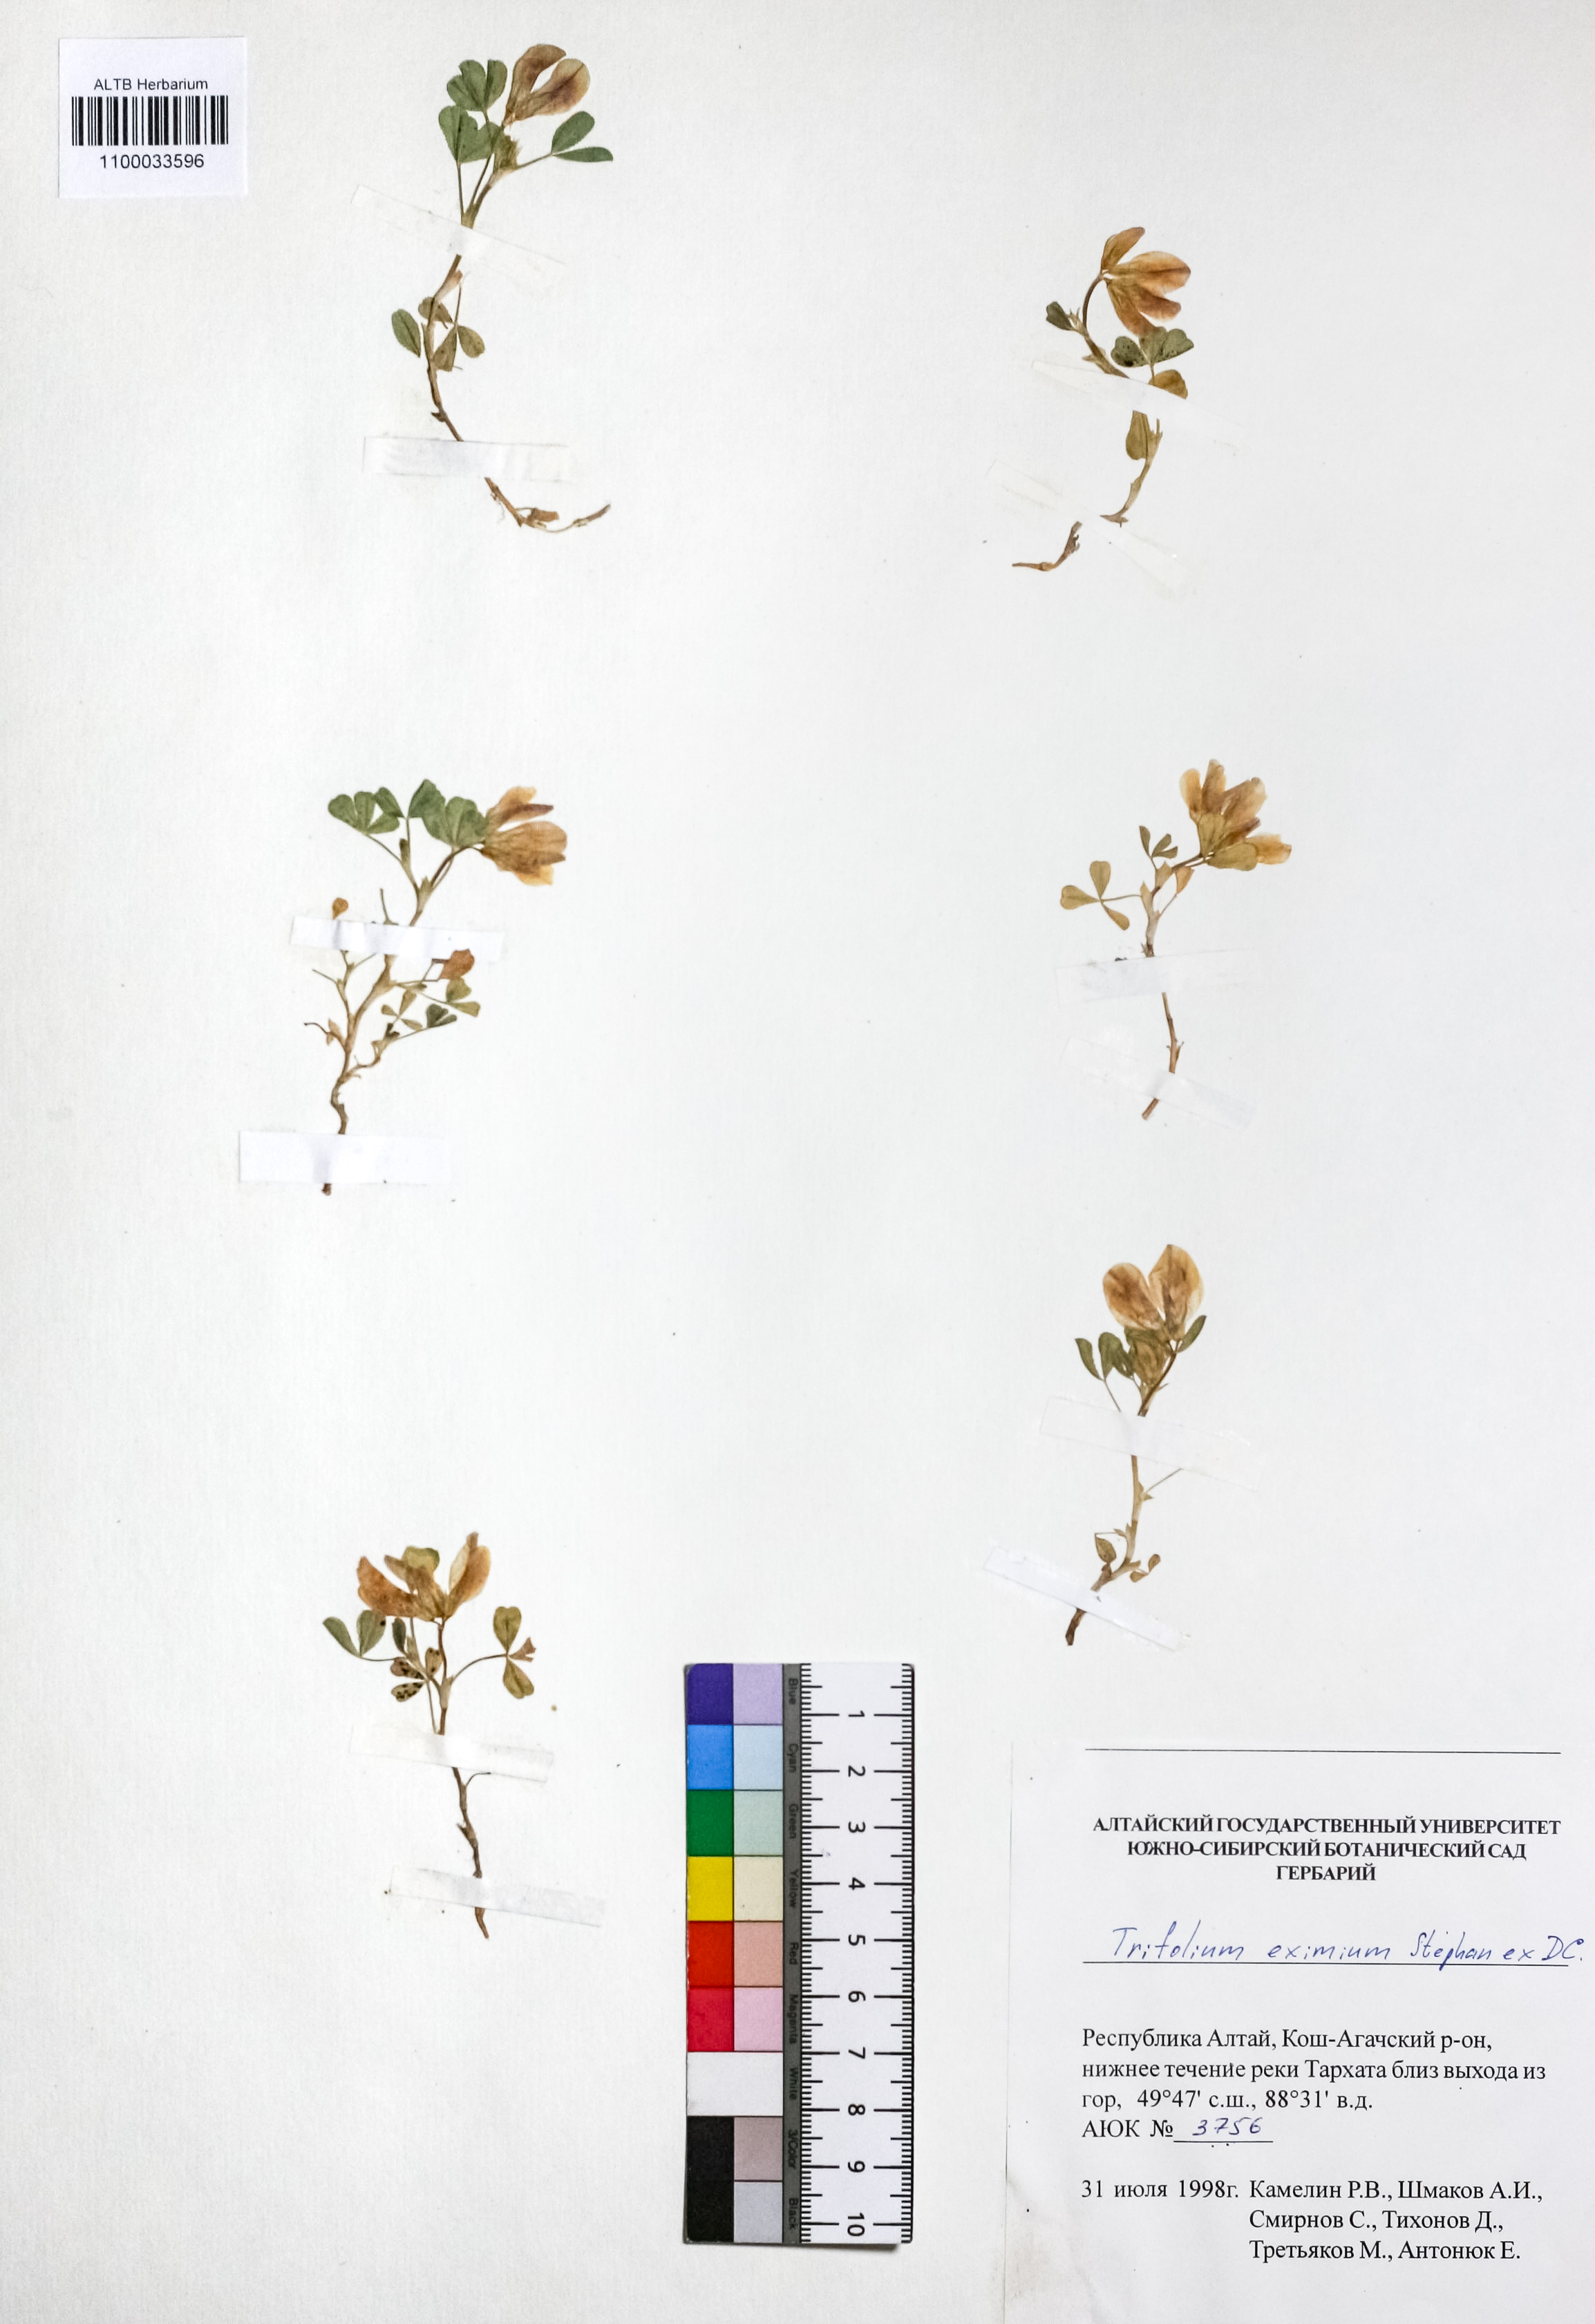 Trifolium eximium Steph. ex Ser.